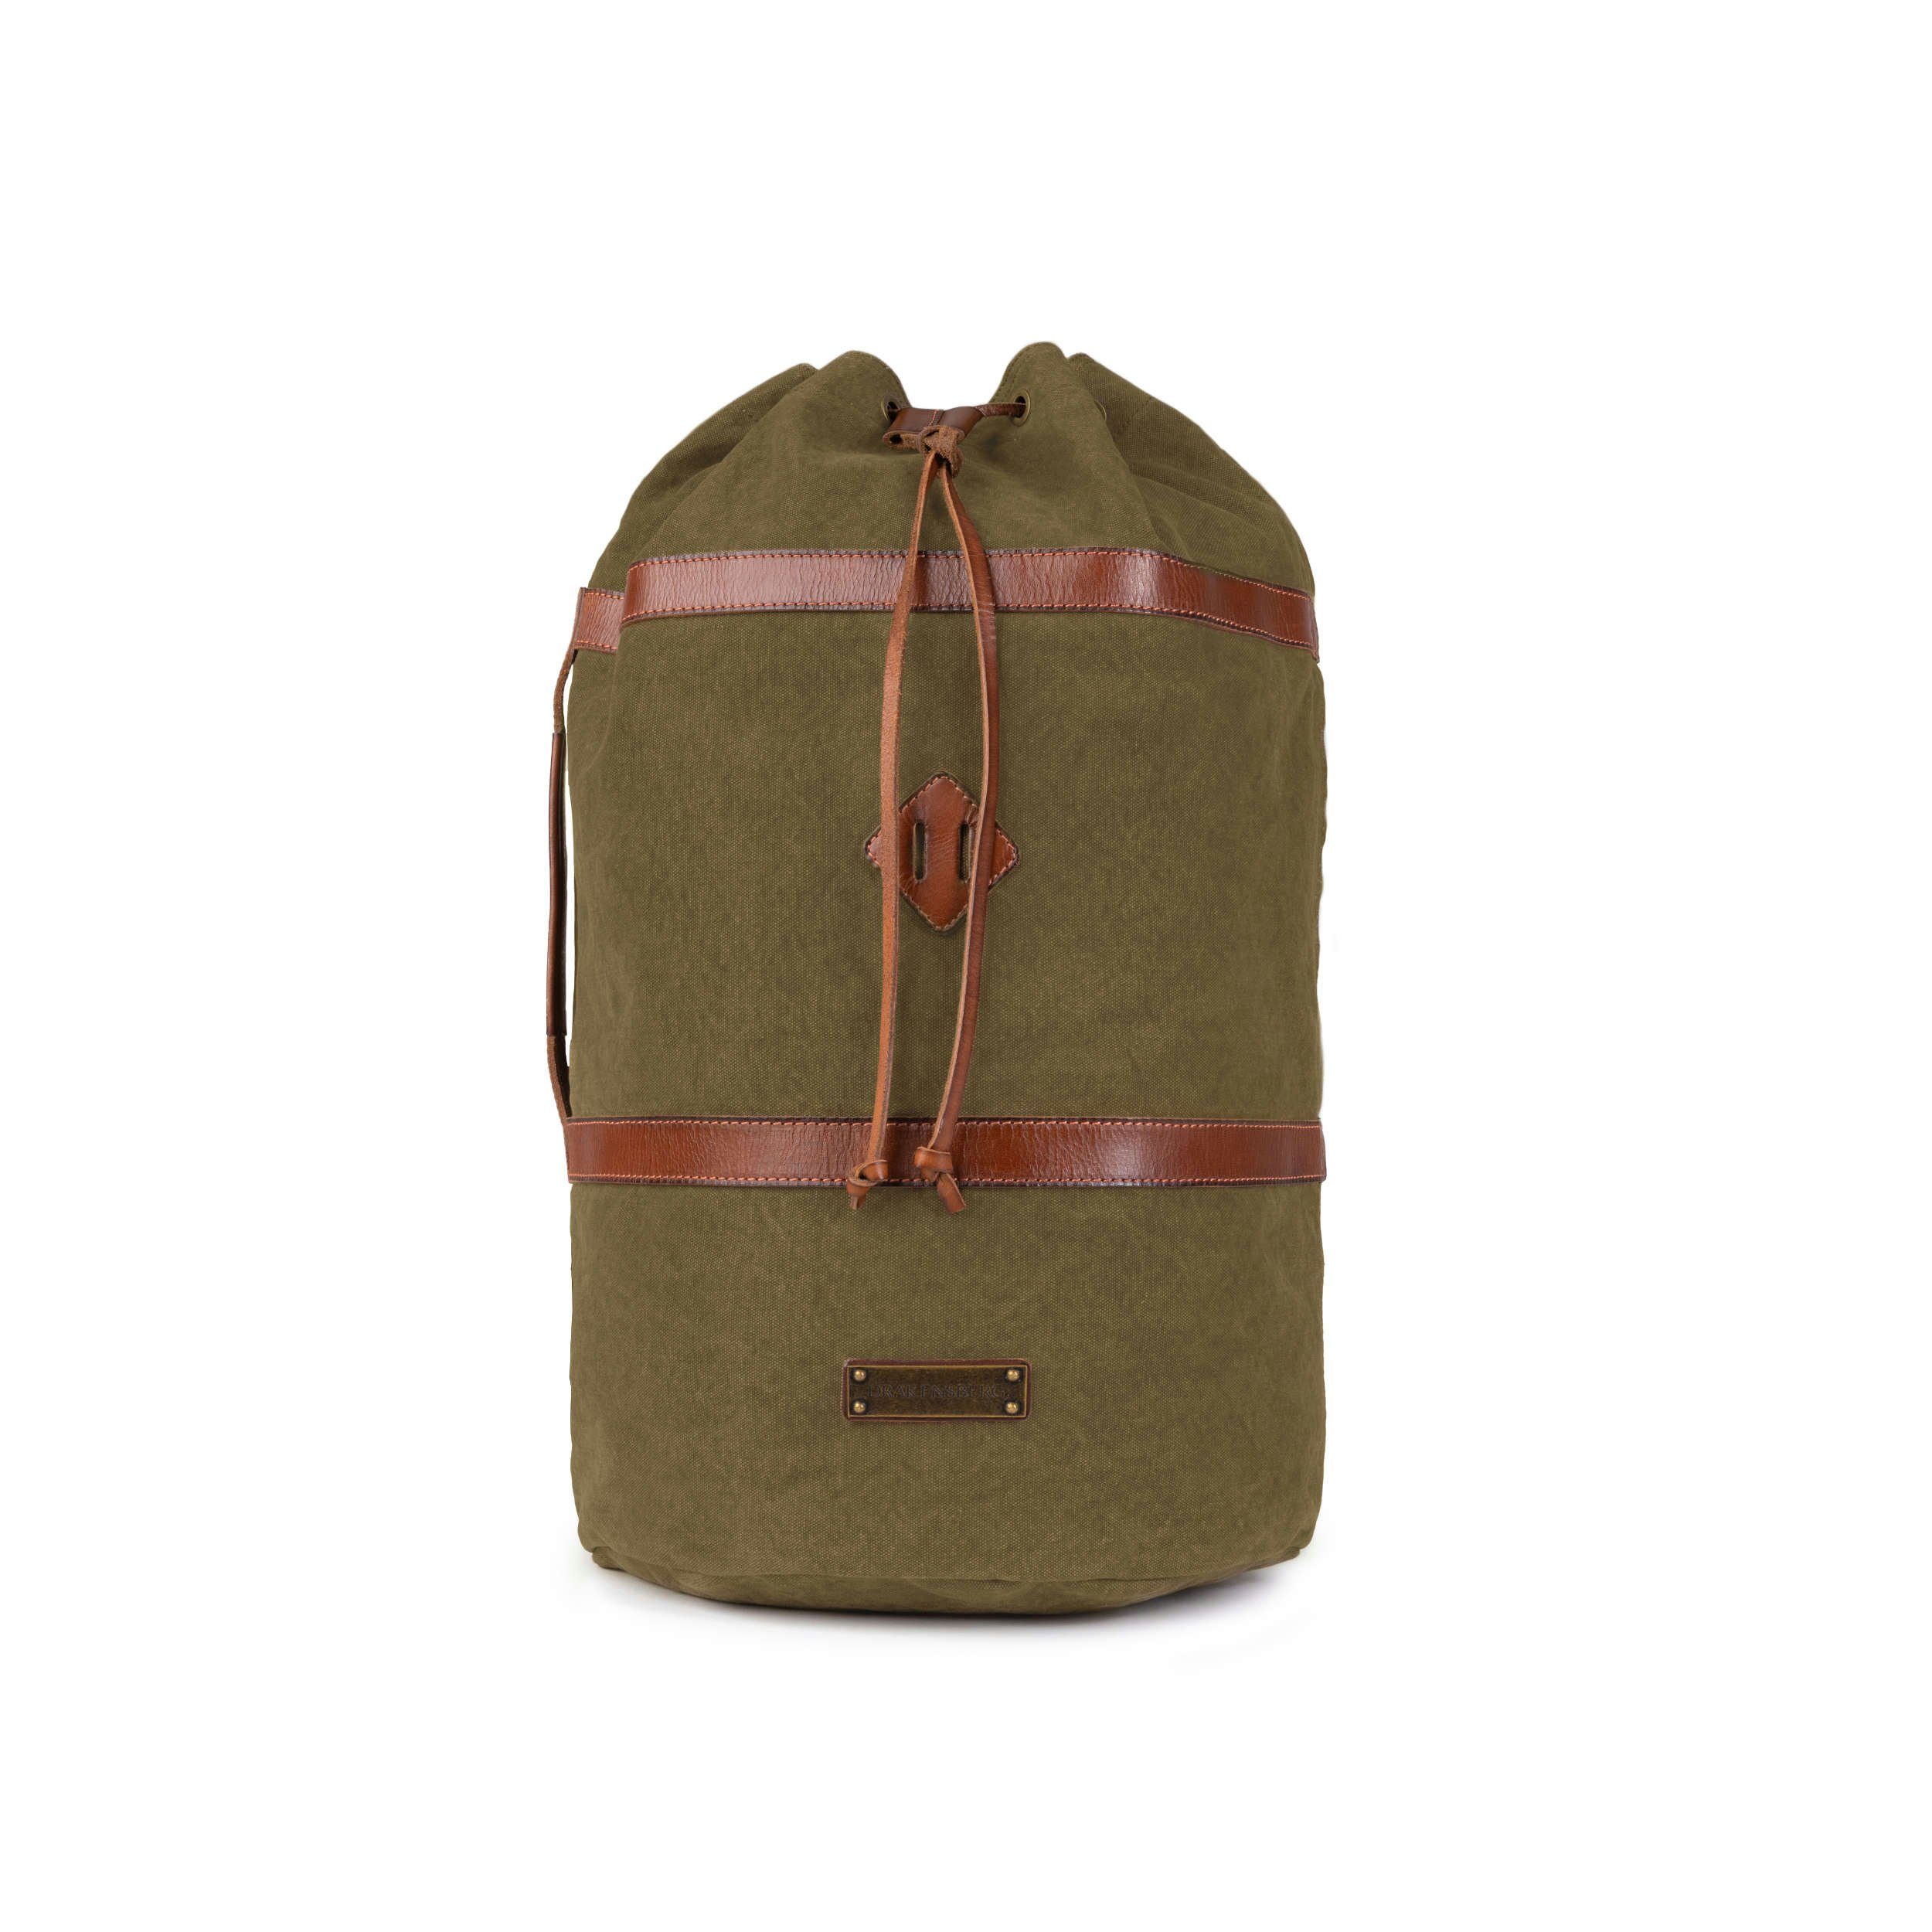 (M) »Robin« DRAKENSBERG aus kleine Reisetasche Vintage Rucksack Canvas Seesack mit Leder und Oliv-Grün, Rucksackfunktion